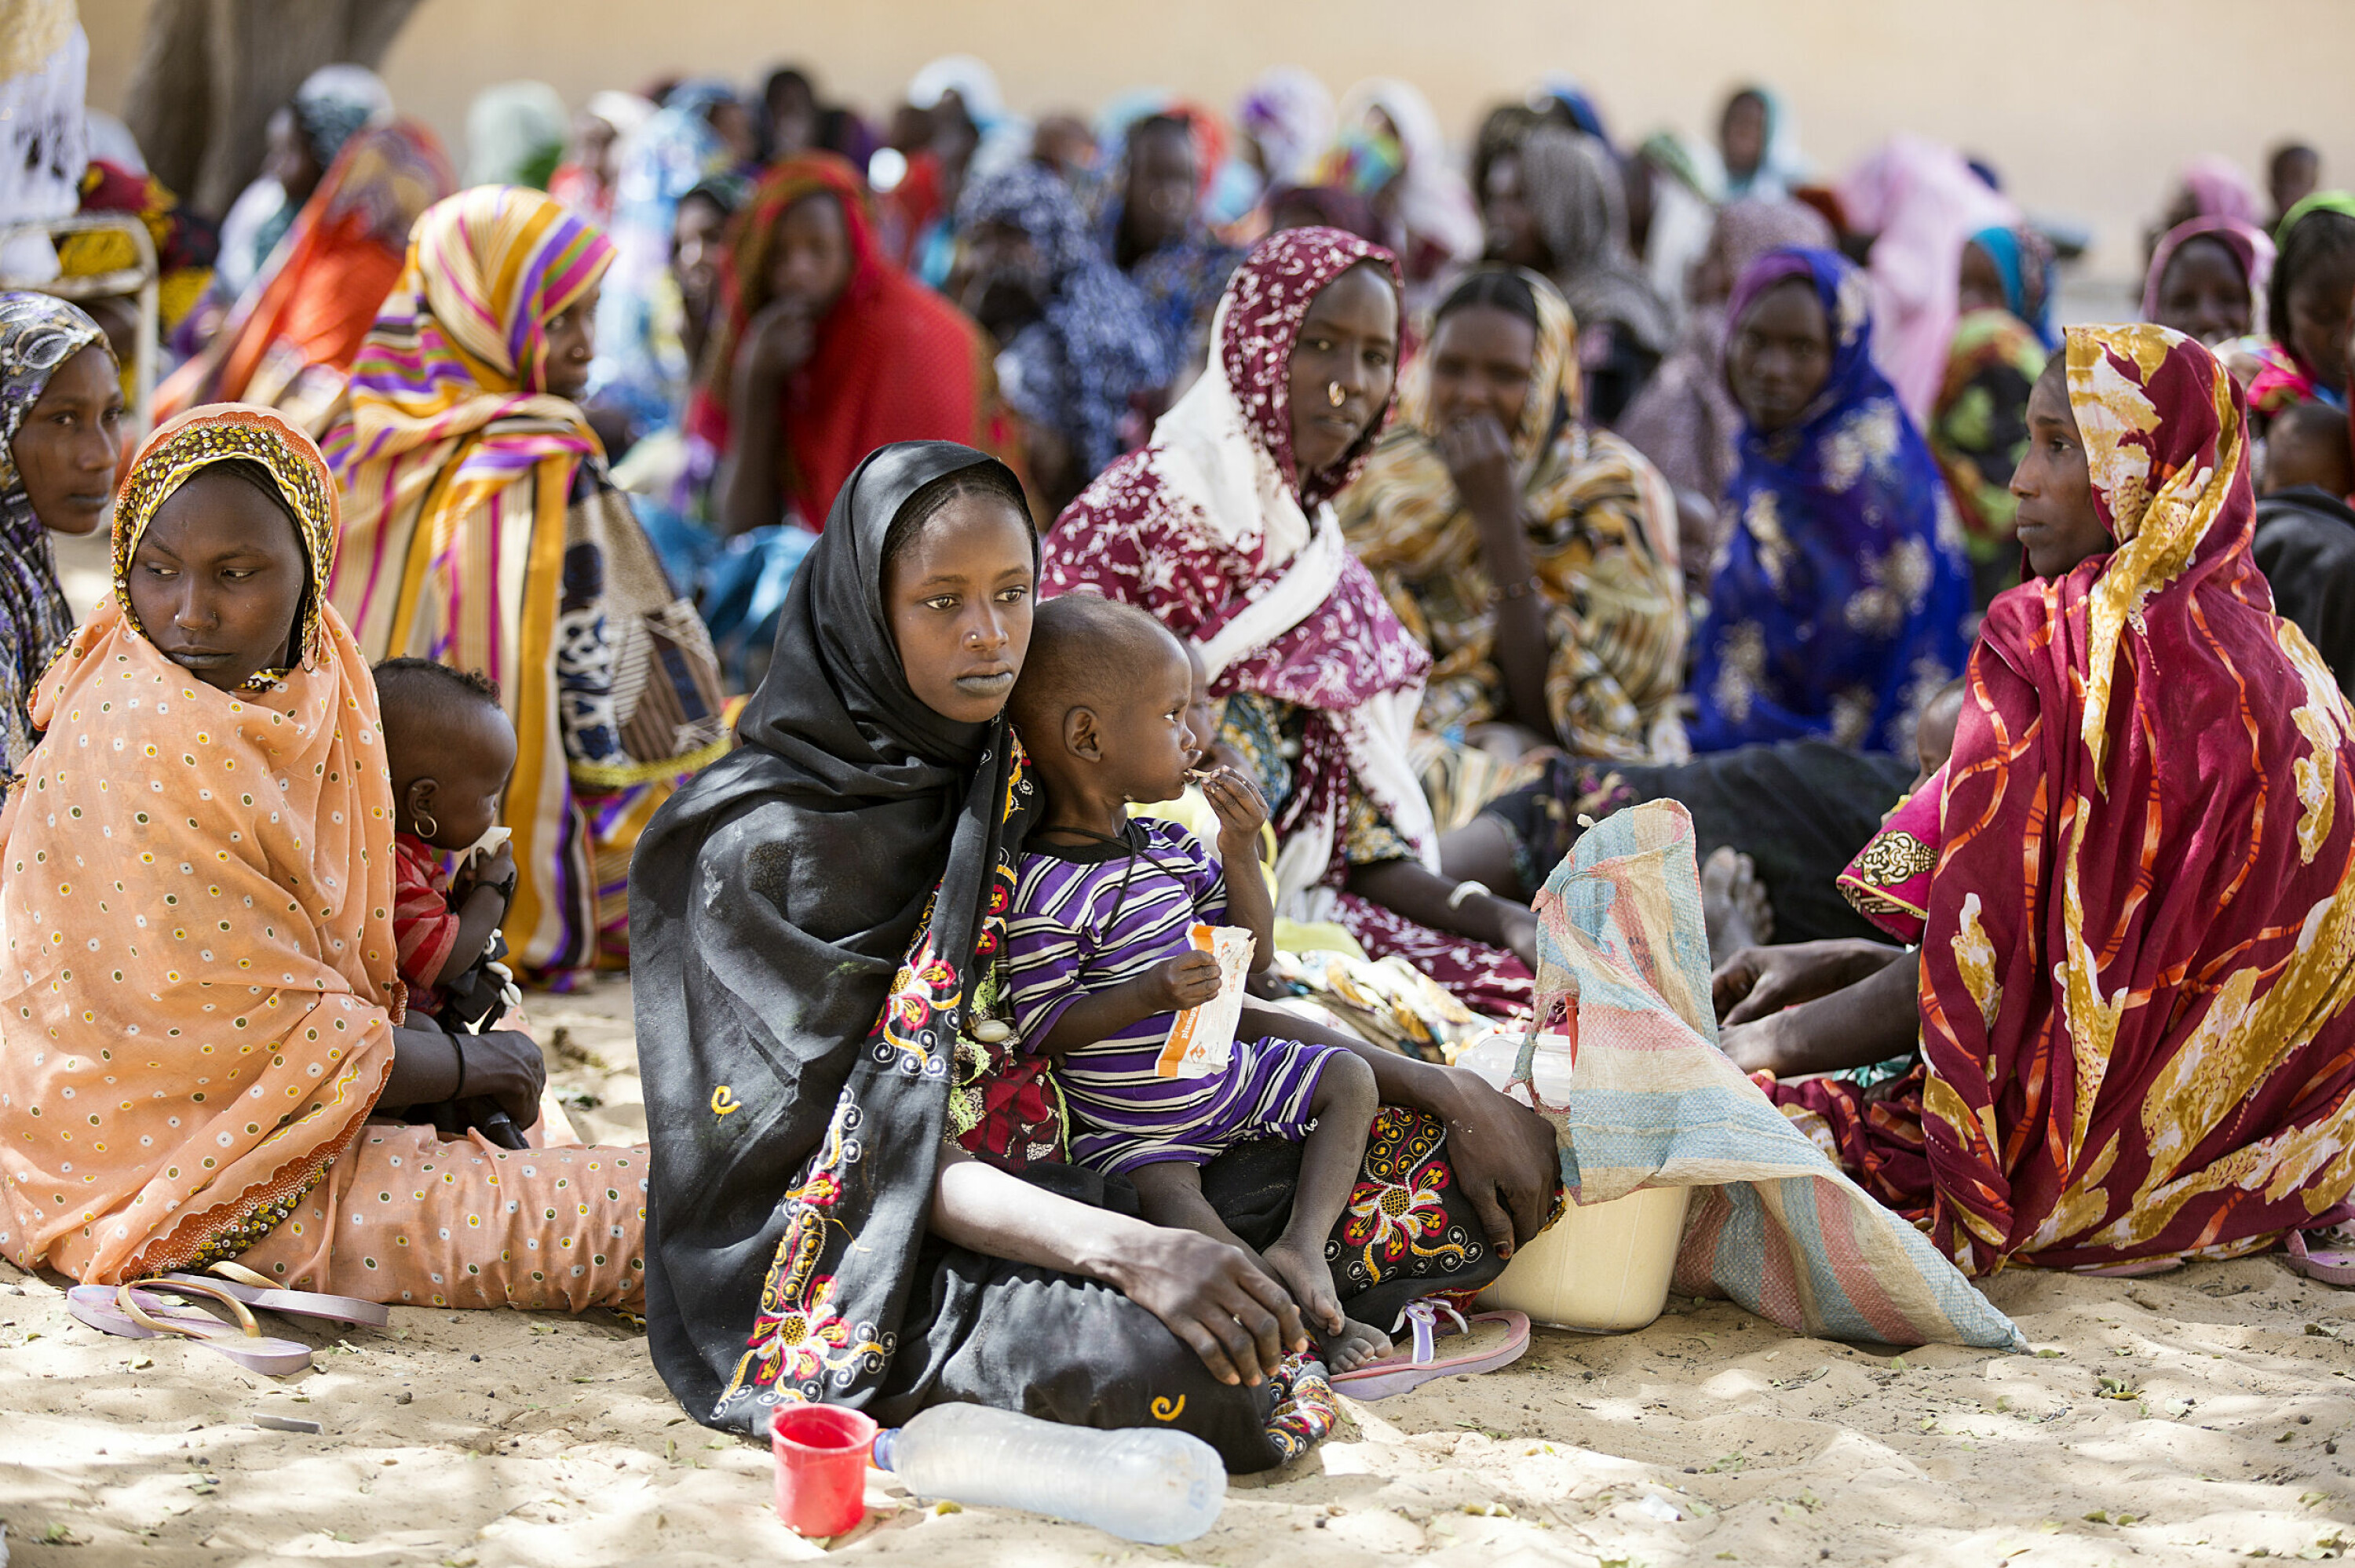 Situasjonen rundt Tsjadsjøen har vært prekær gjennom en årrekke. Bakgrunnen for det FN tidligere har omtalt som en av verdens verste humanitære kriser, er at terrorgruppa Boko Haram siden 2009 har terrorisert sivilbefolkningen. Ifølge Lake Chad Basin Crisis Response Plan for 2022, vil nesten tre millioner mennesker være avhengig av nødhjelp i områdene rundt Tsjadsjøen dette året. Bildet er tatt i Lac-regionen i Tsjad i januar 2017.